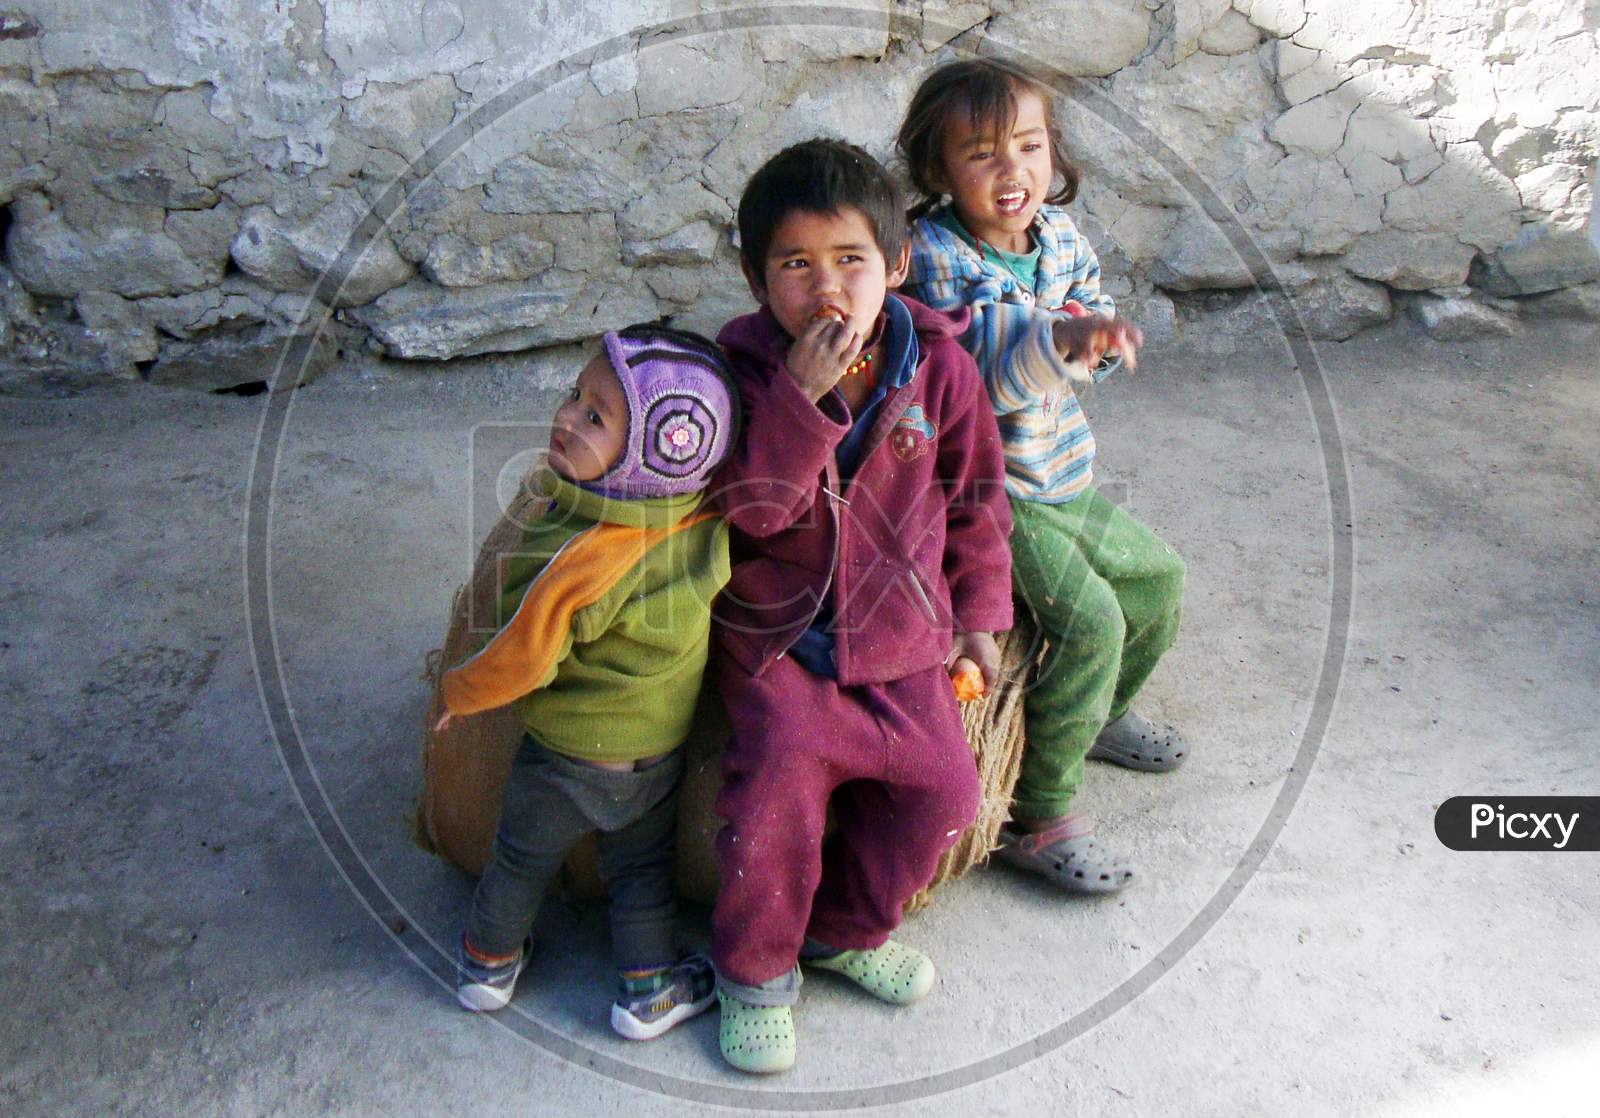 Village children of Himachal Pradesh, India